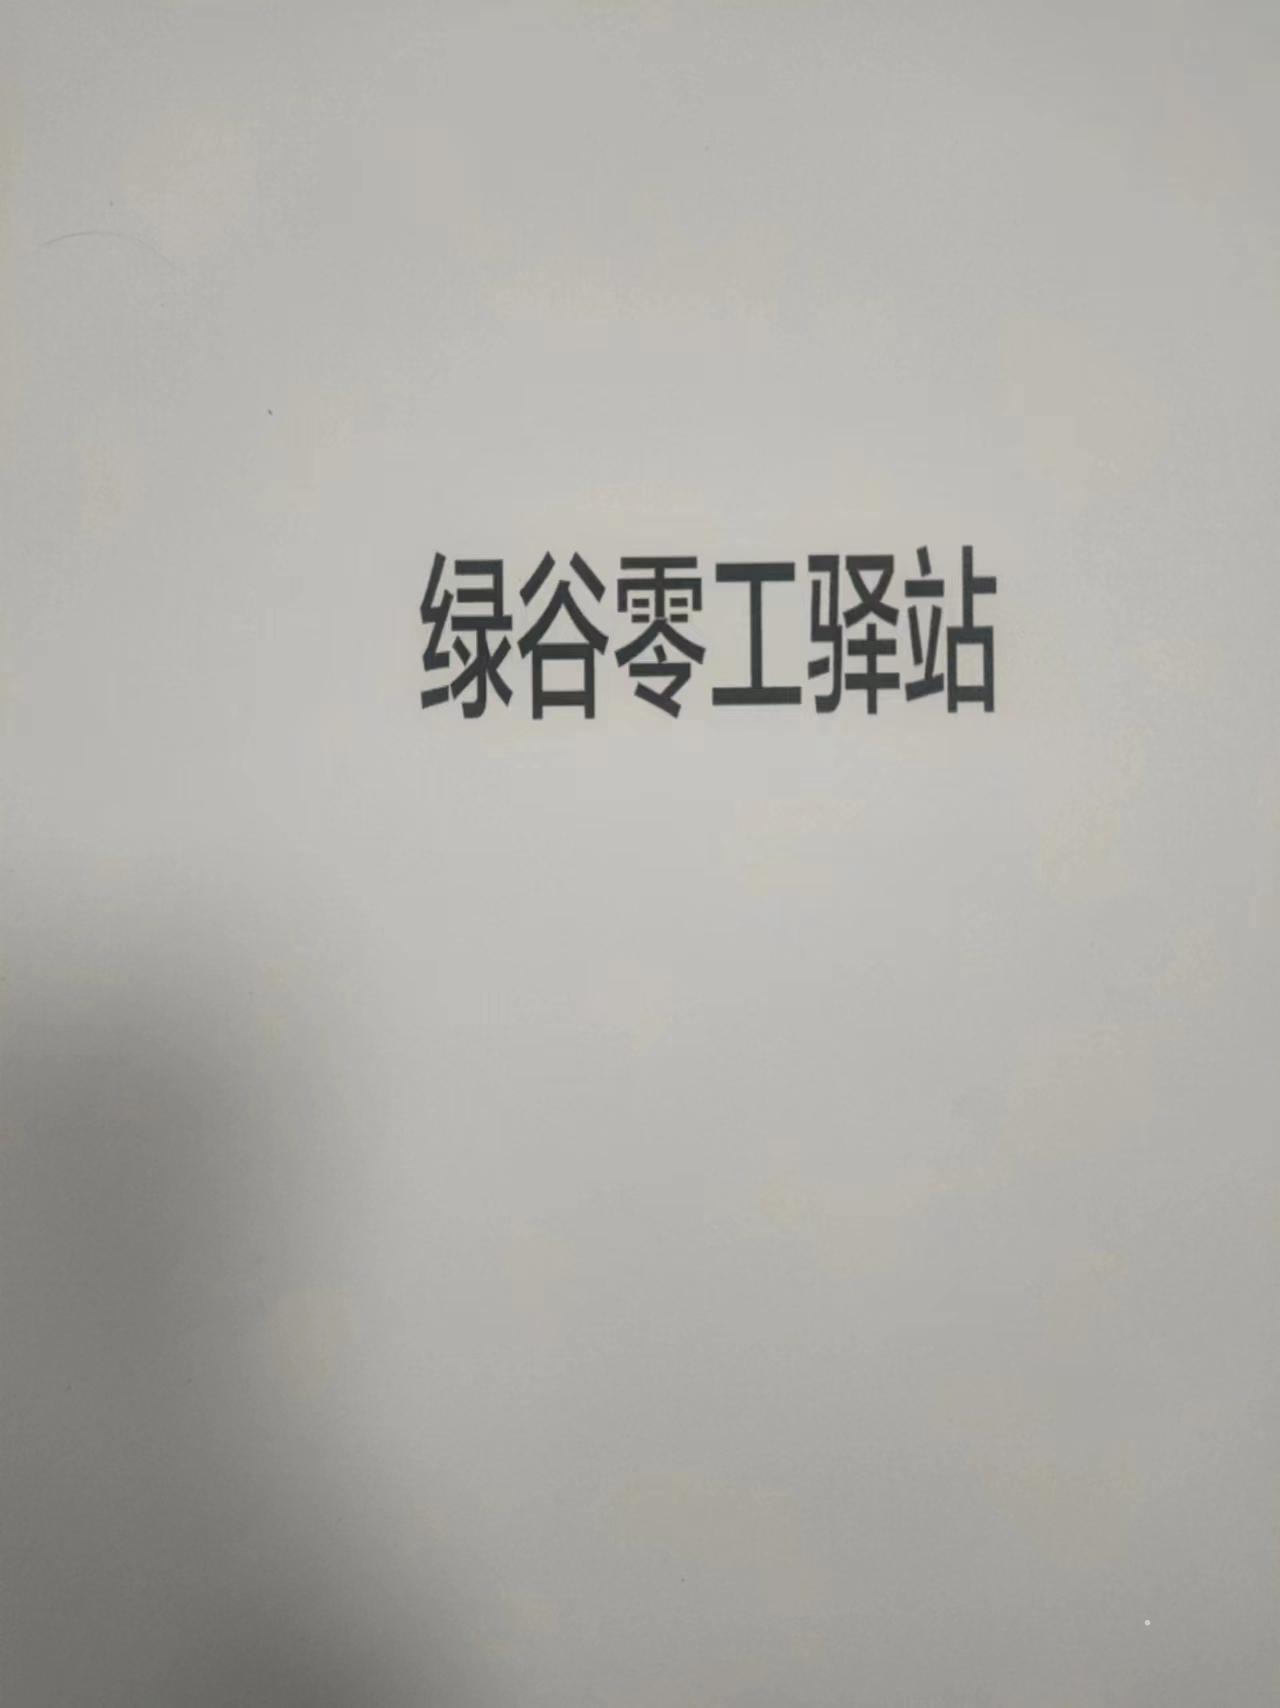 绿谷零工驿站logo